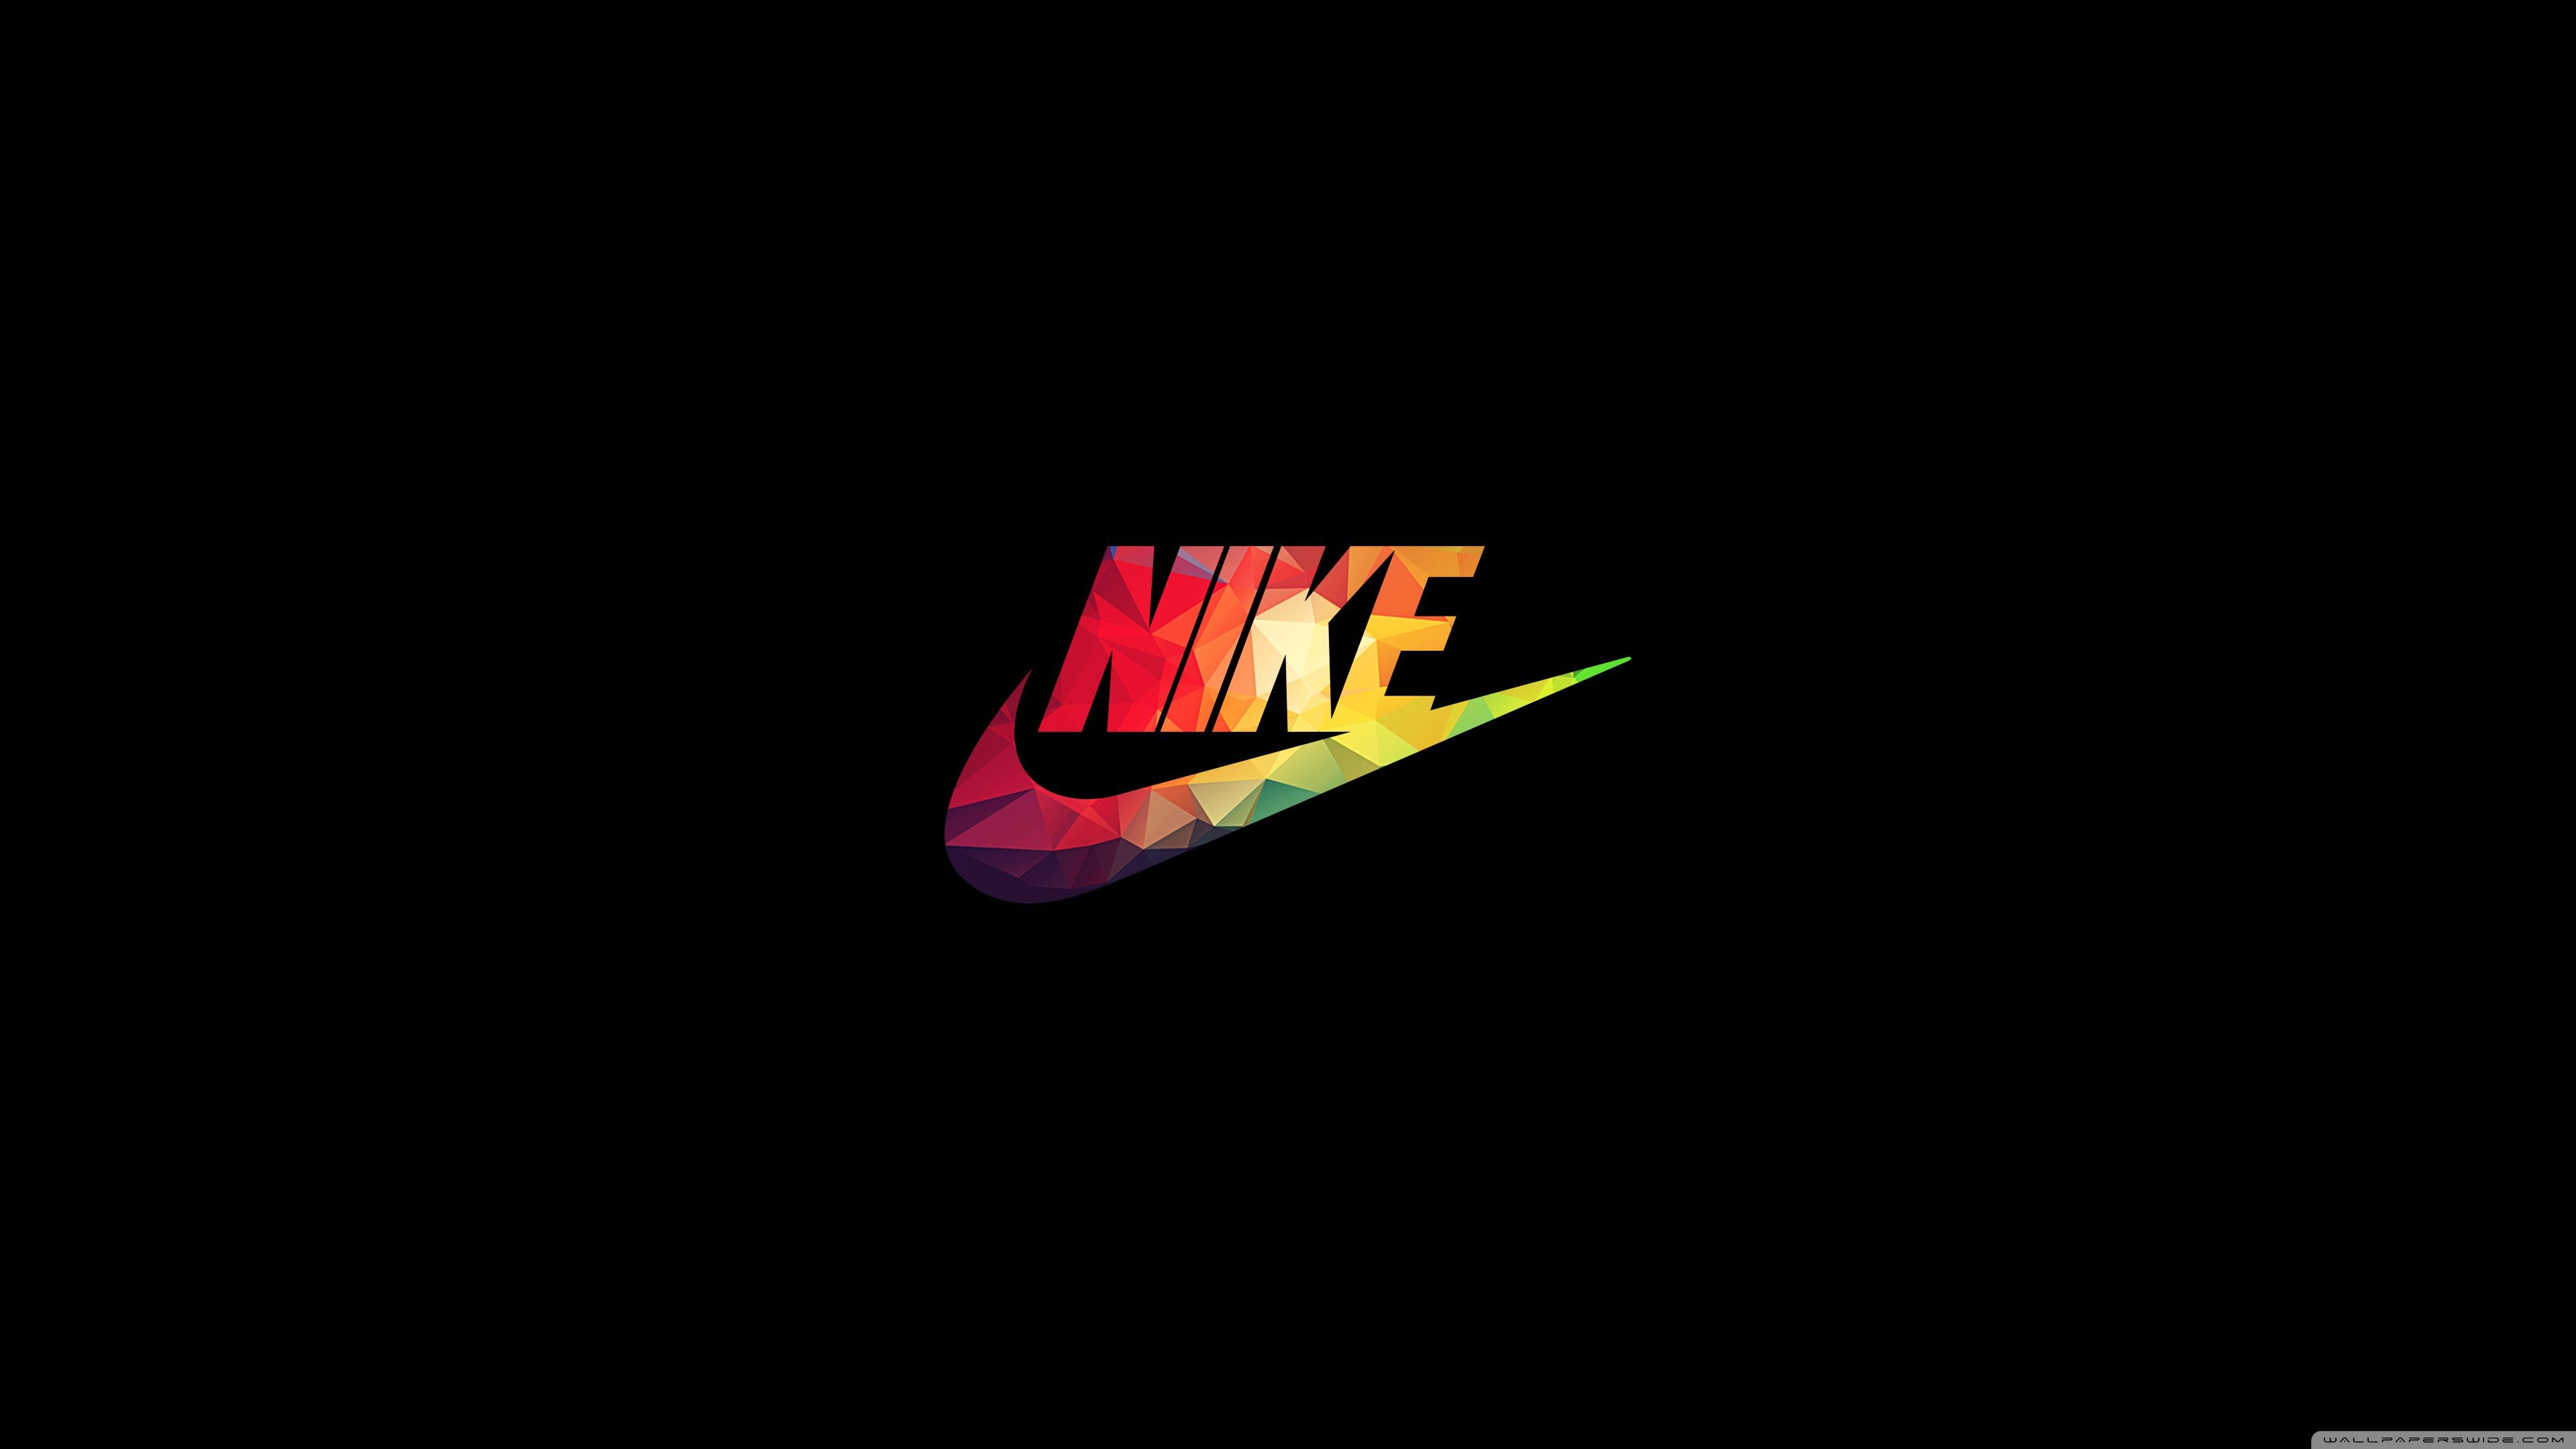 Nike Hd Wallpaper - KibrisPDR